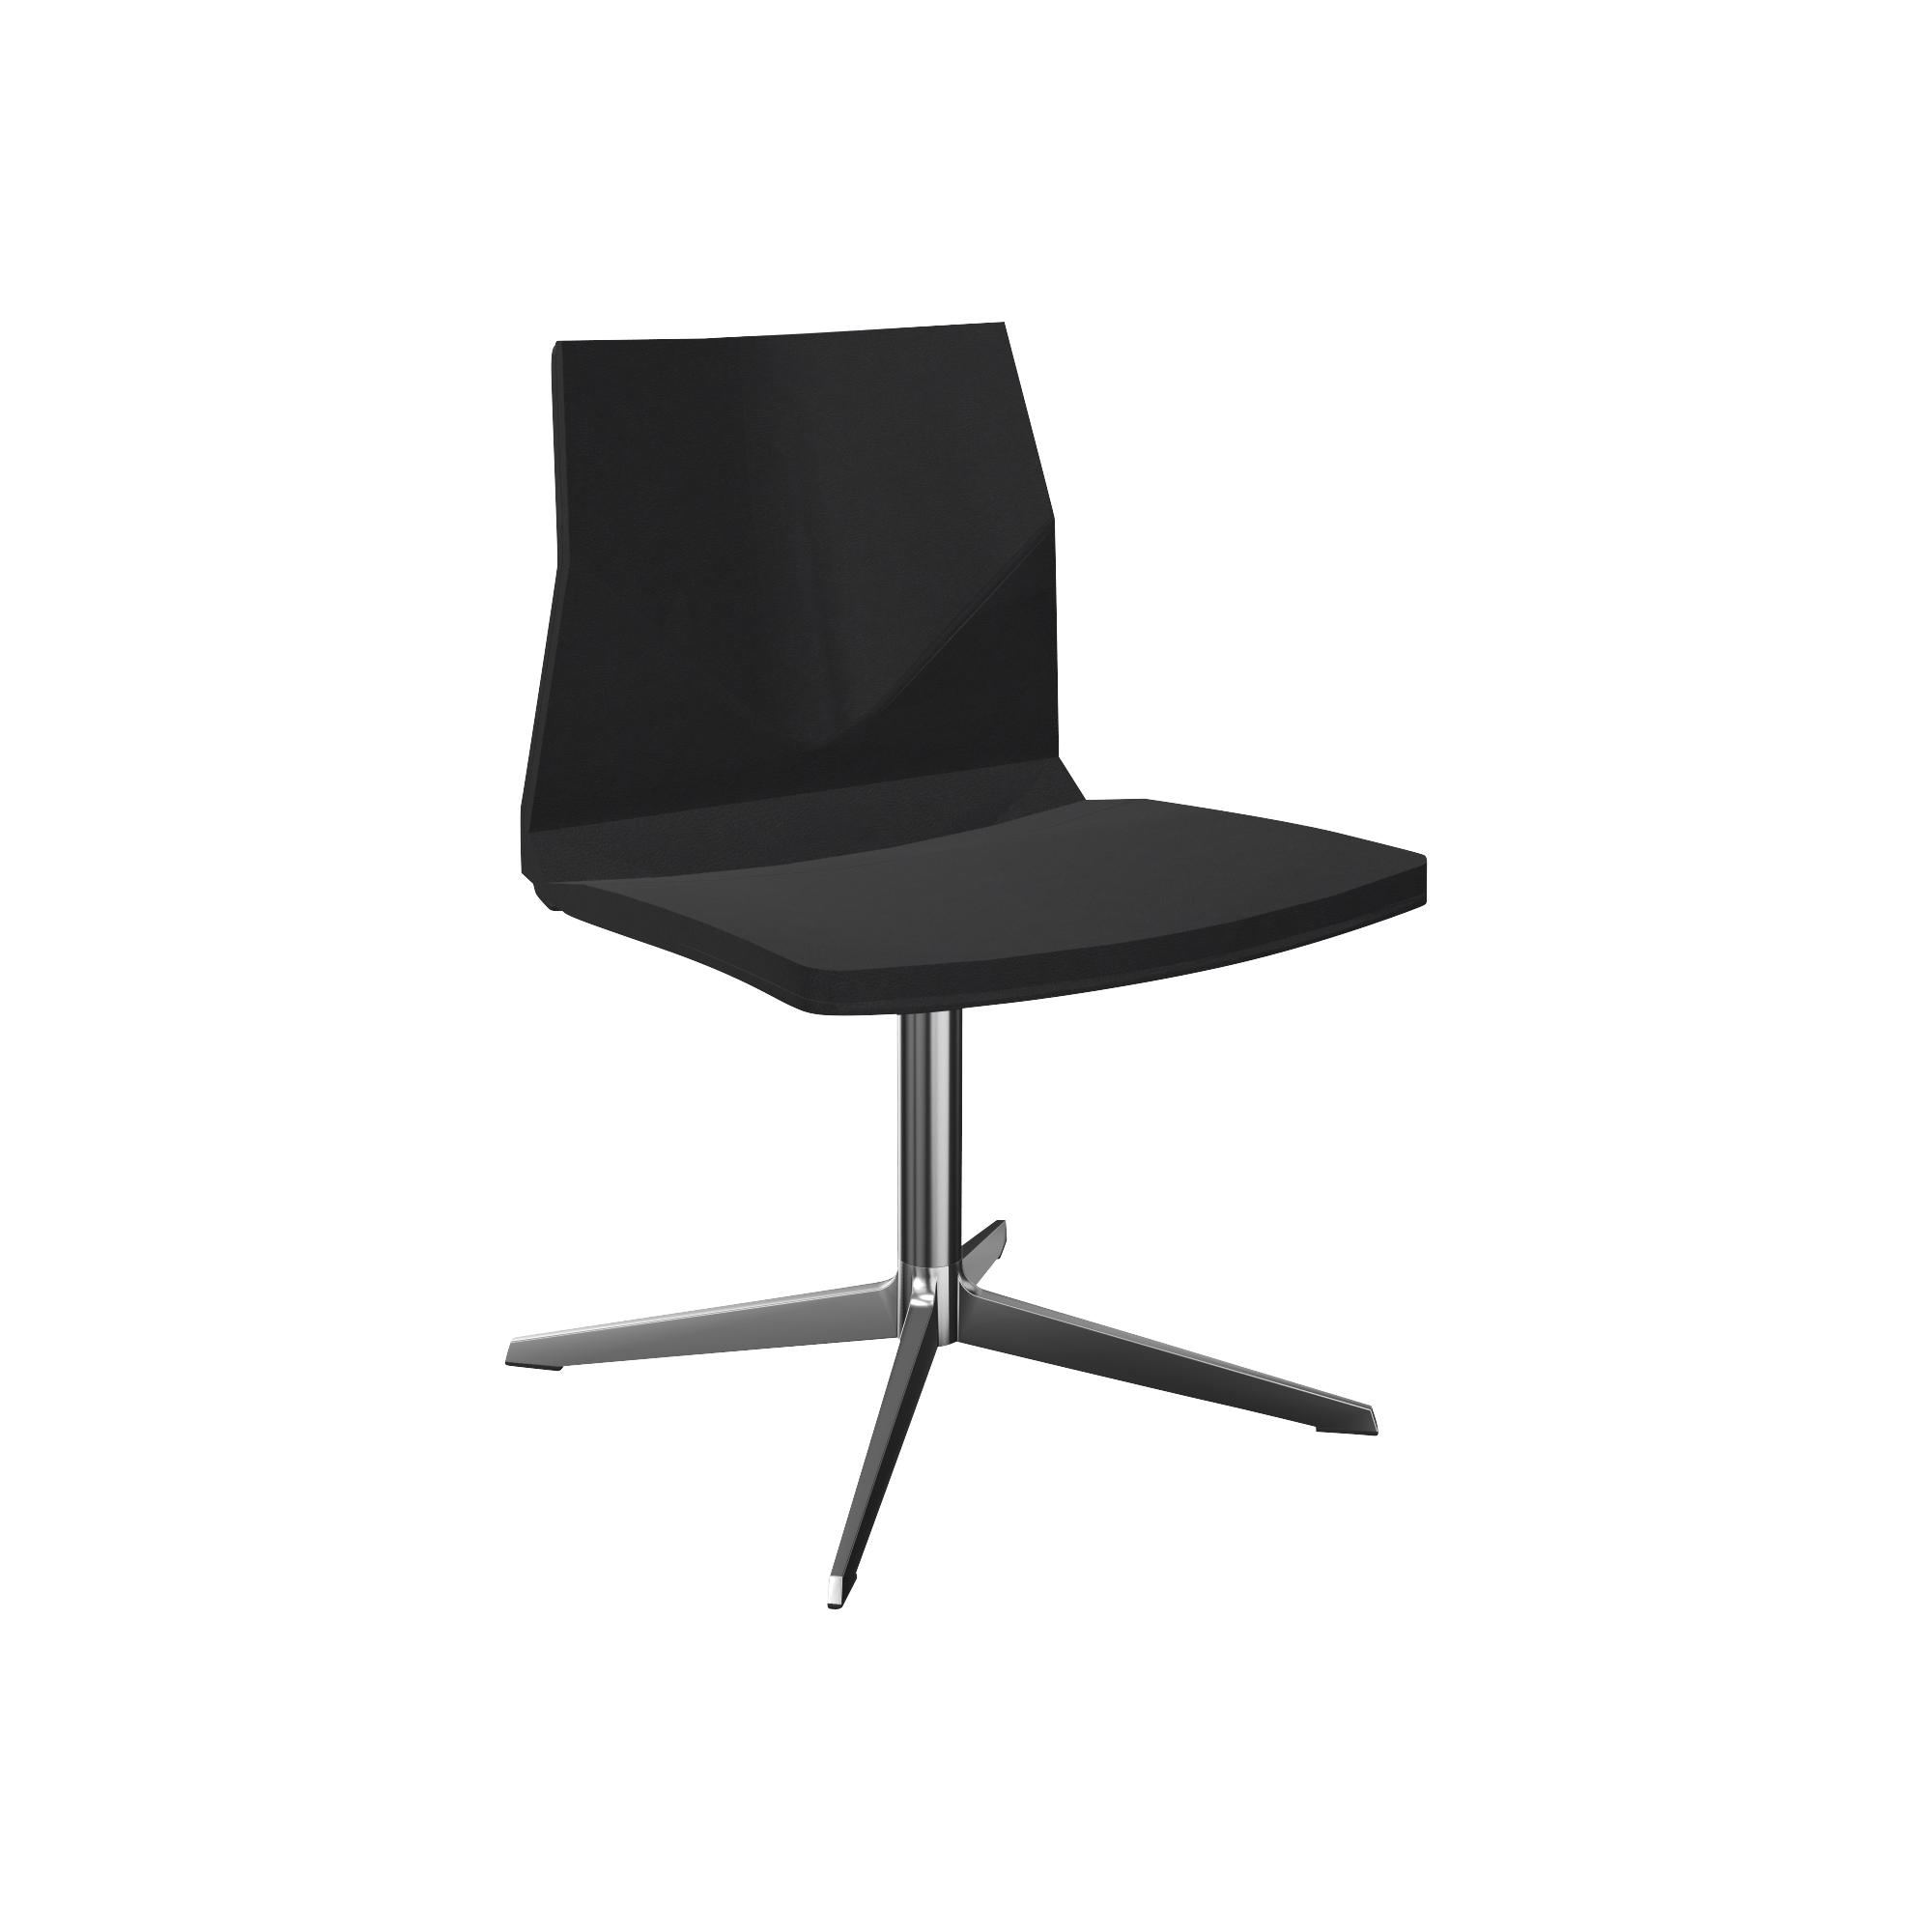 Black chair with pedestal chrome leg